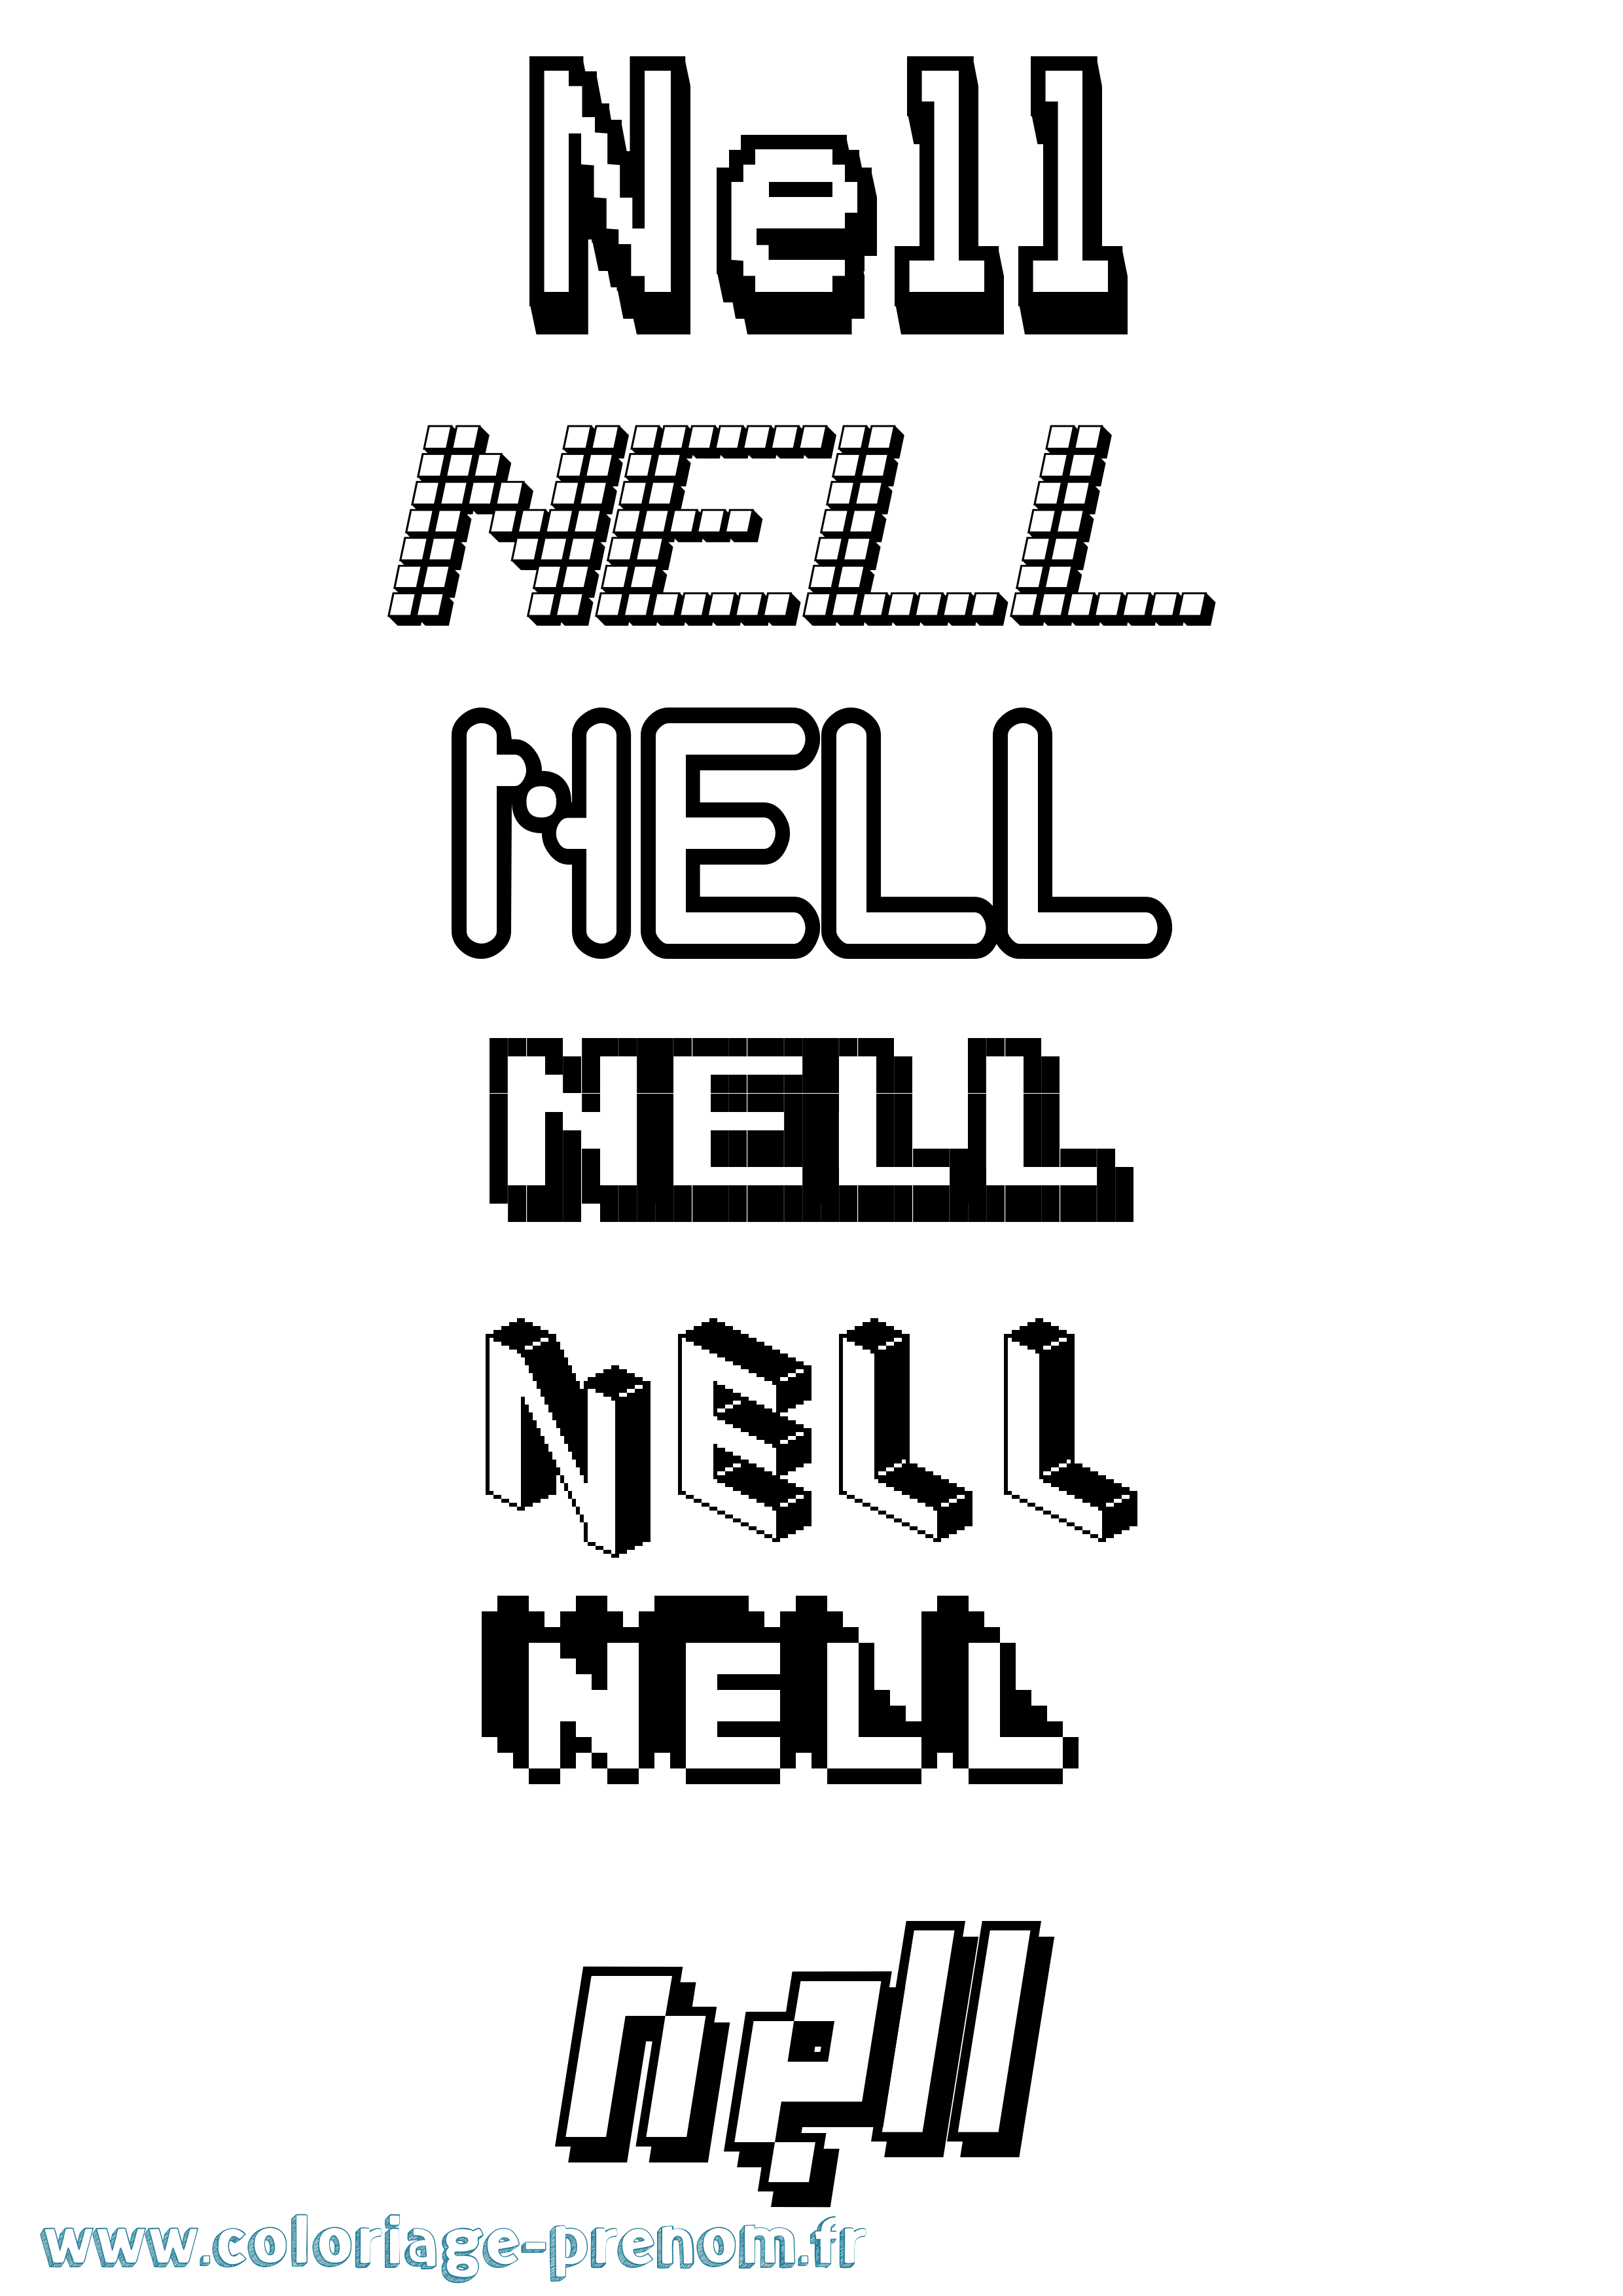 Coloriage prénom Nell Pixel